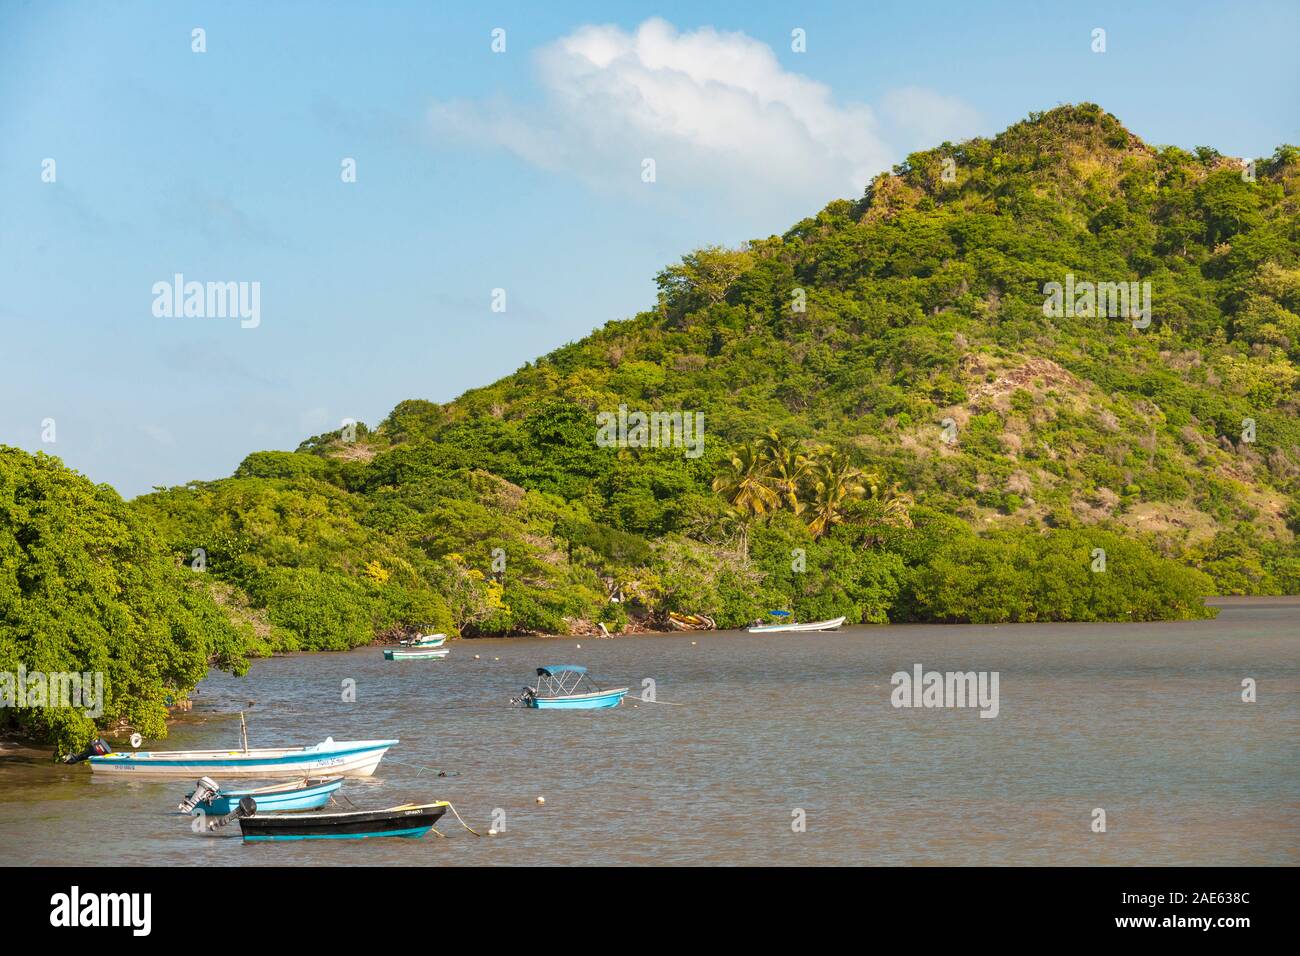 Coastal scenery at Rocky Point on Providencia island, Colombia Stock Photo